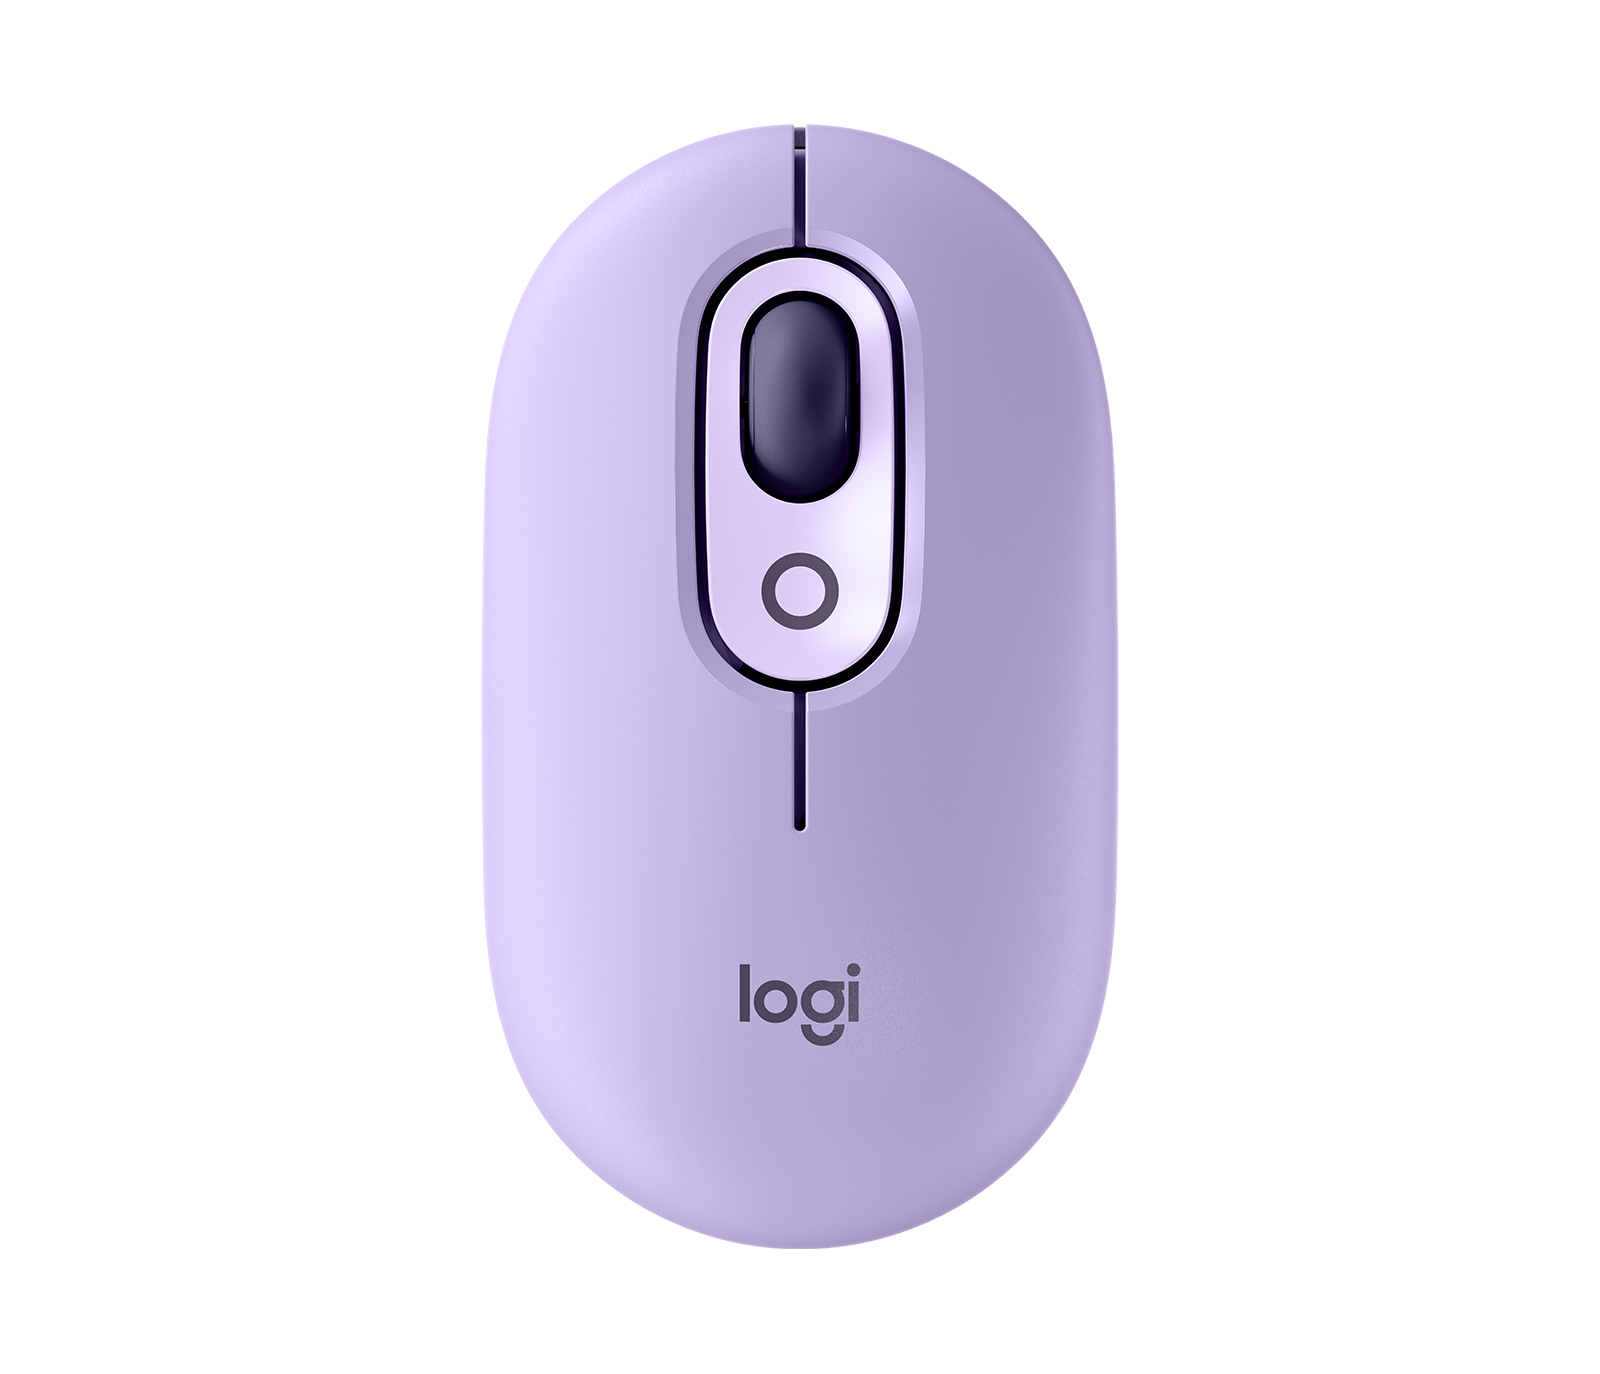 Logitech sort une souris pour Android, les Samsung Galaxy Tabs